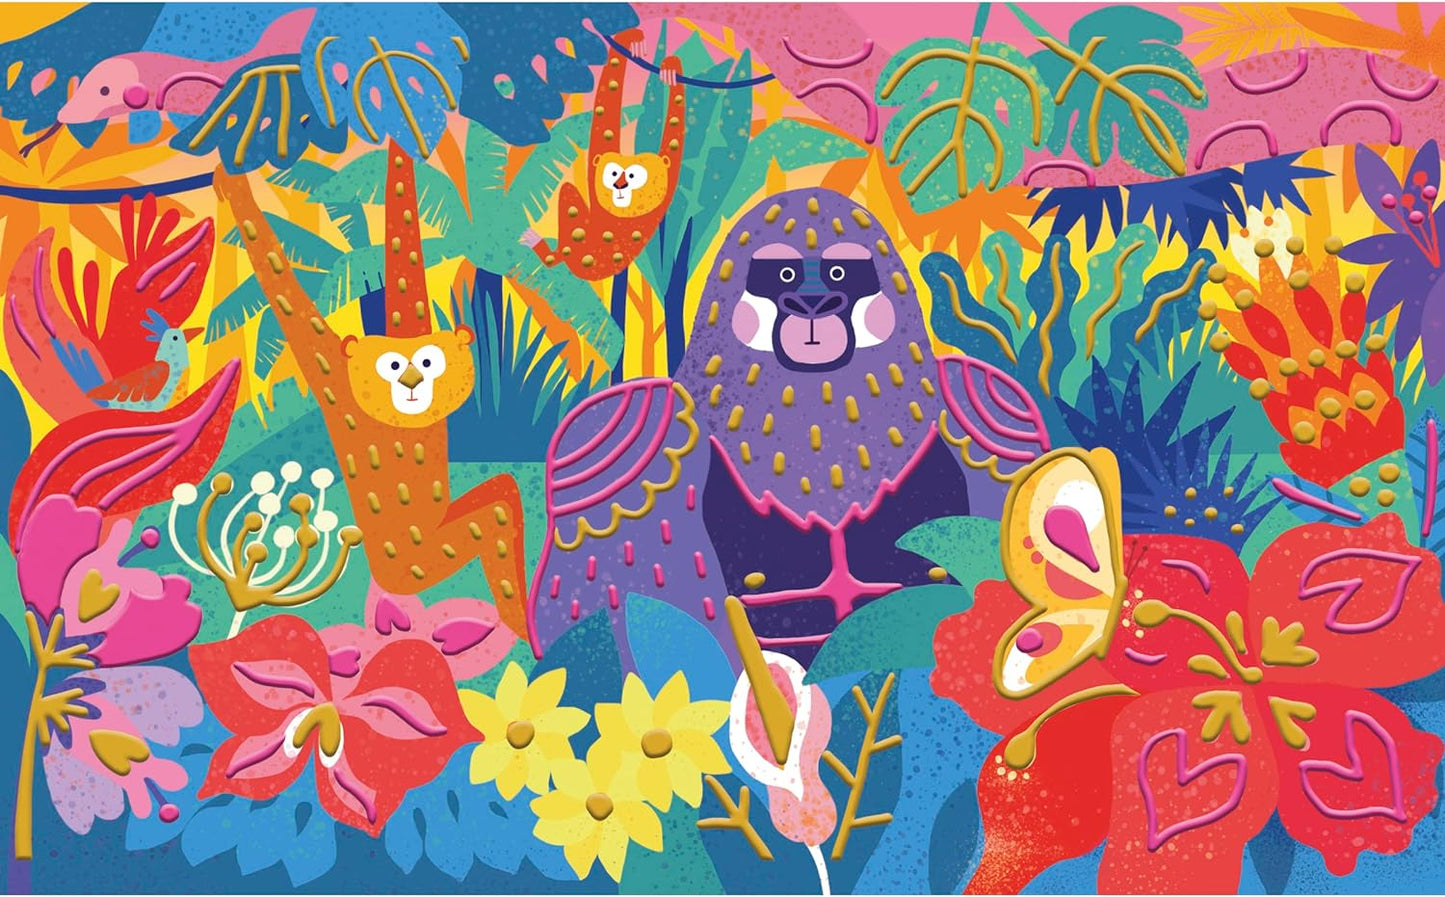 Janod Pintura 3D – Tema Selva – Les Ateliers du Calme – Kit de Lazer Criativo Infantil – Tinta Dourada e Rosa Neon para Crianças – Estimula a Motricidade Fina e a Concentração – A partir de 7 anos